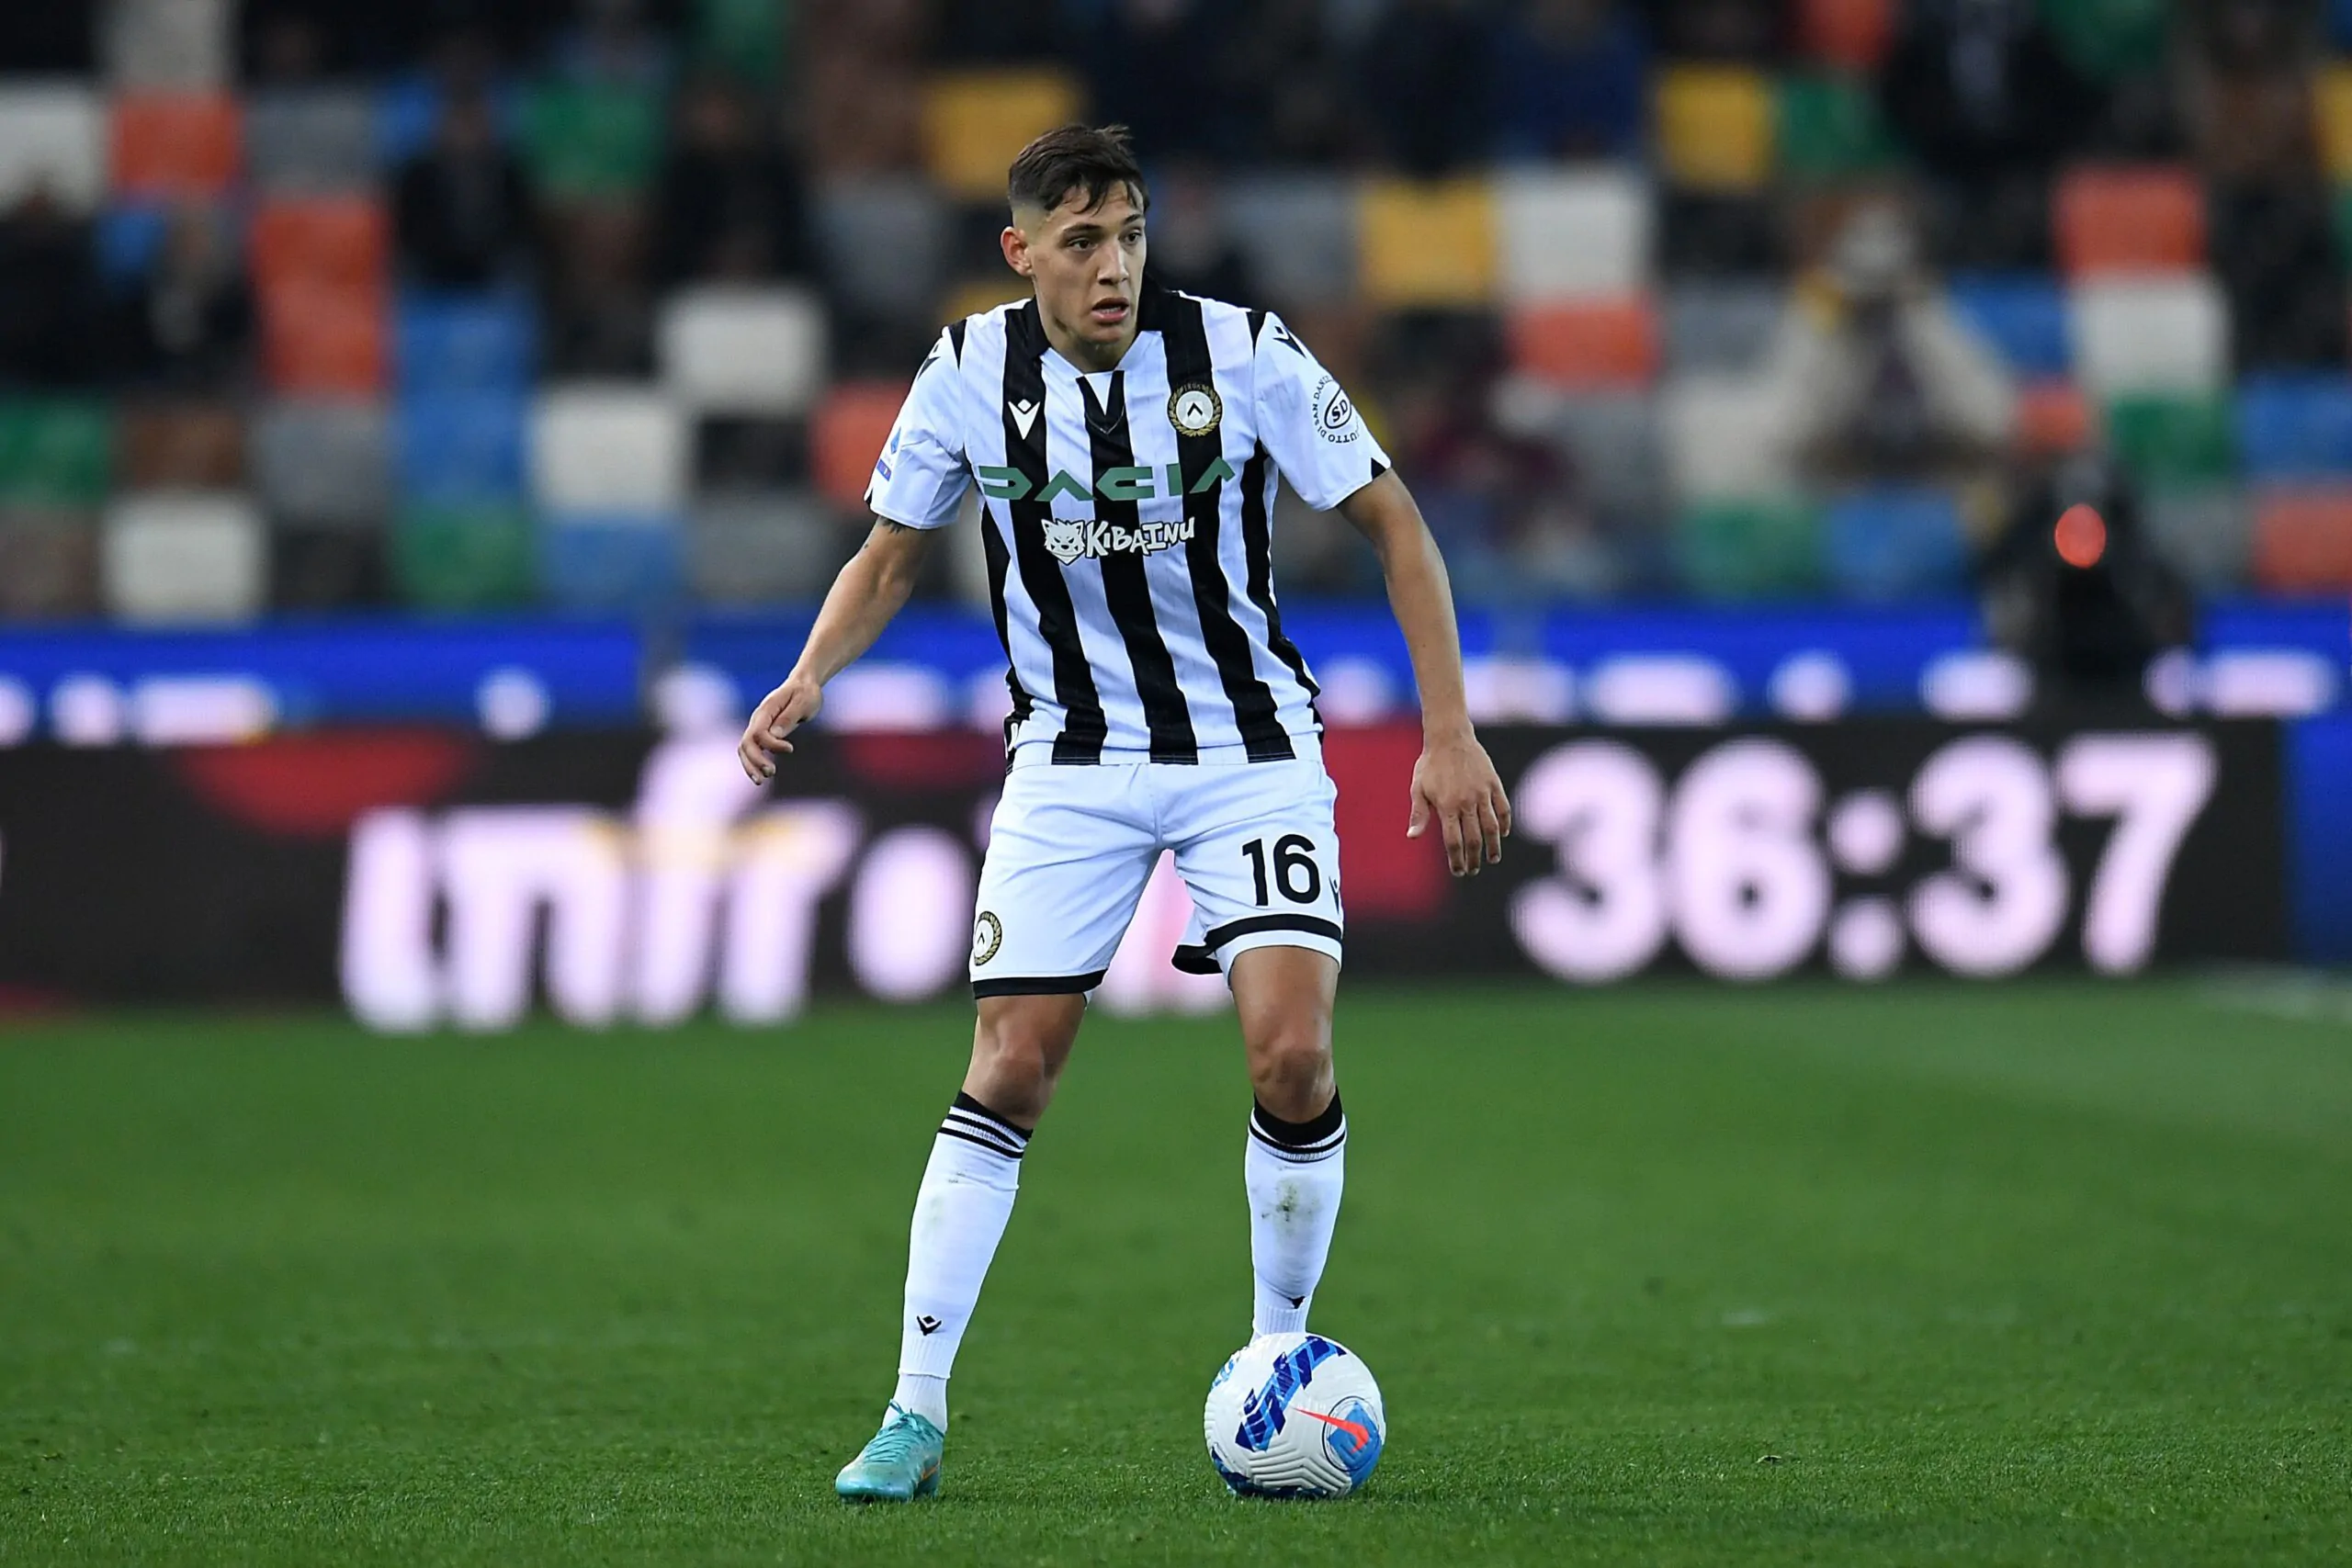 Concorrenza per la Juventus: offerta all’Udinese per Molina! I dettagli